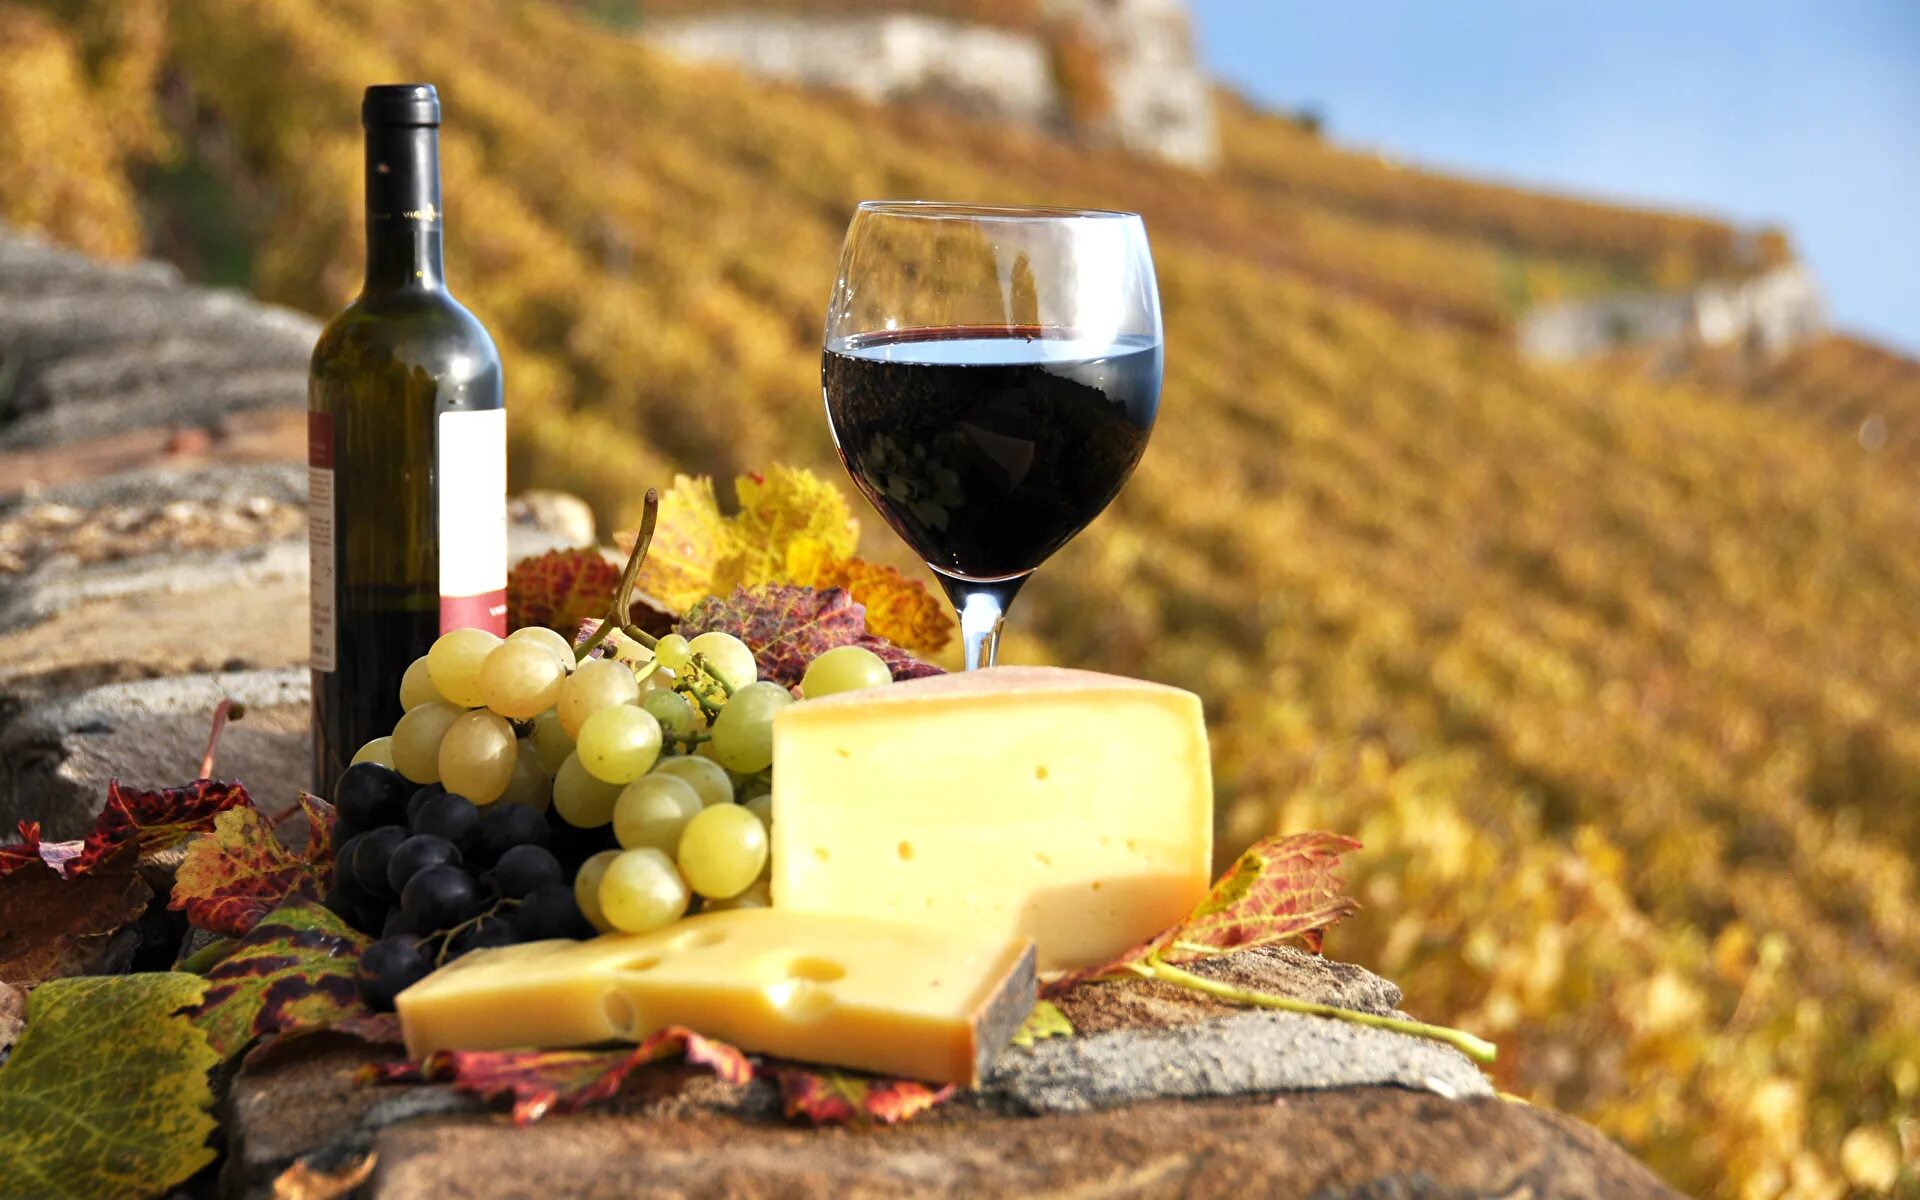 Картинку вине. Вино и сыр. Вино сыр виноград. Вино осень. Вино виноградники.